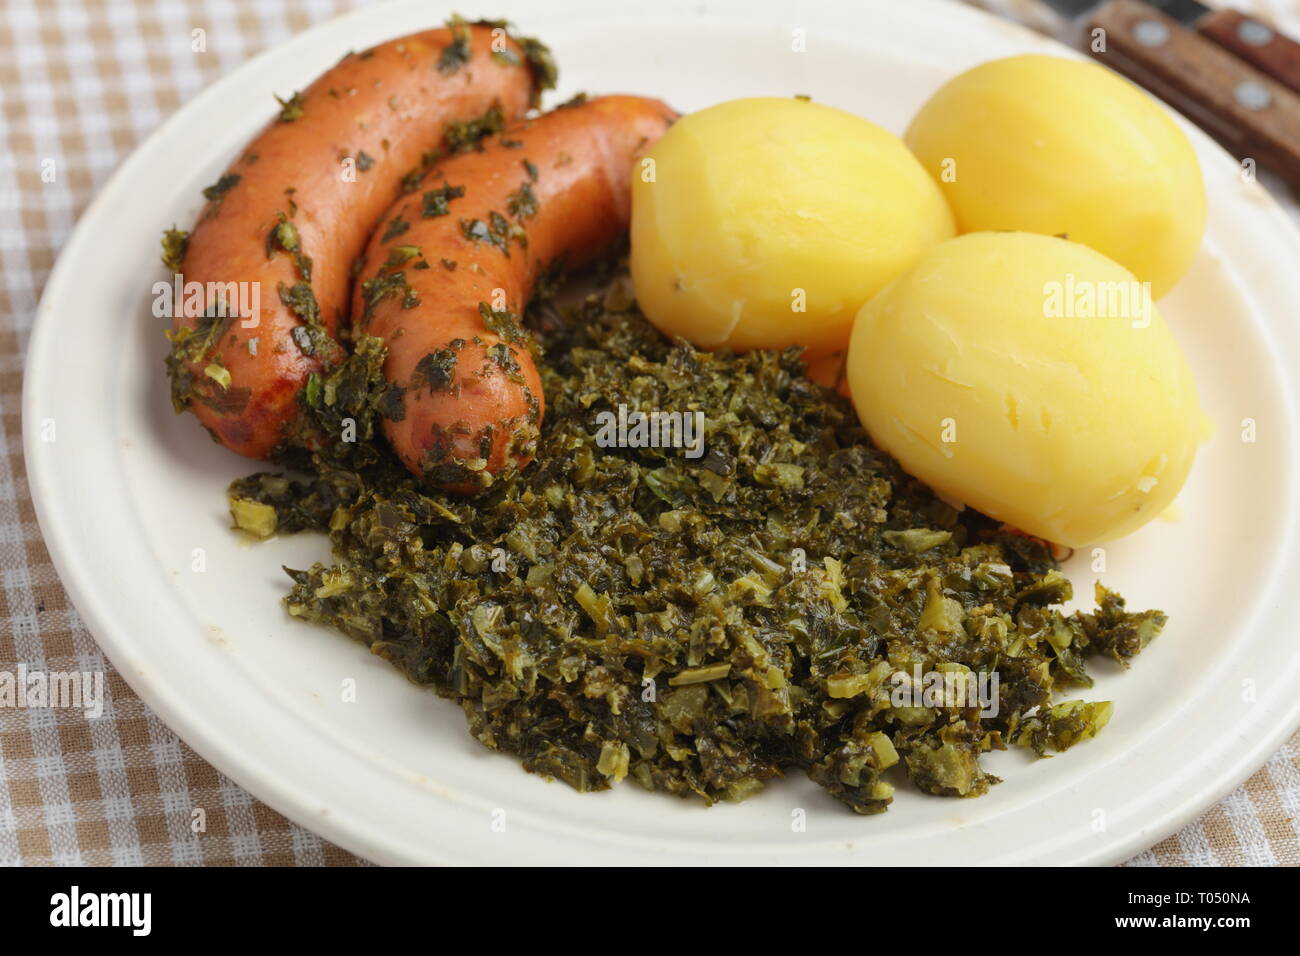 Saucisses grillées, le kale, et des pommes de terre, le plat traditionnel allemand Banque D'Images